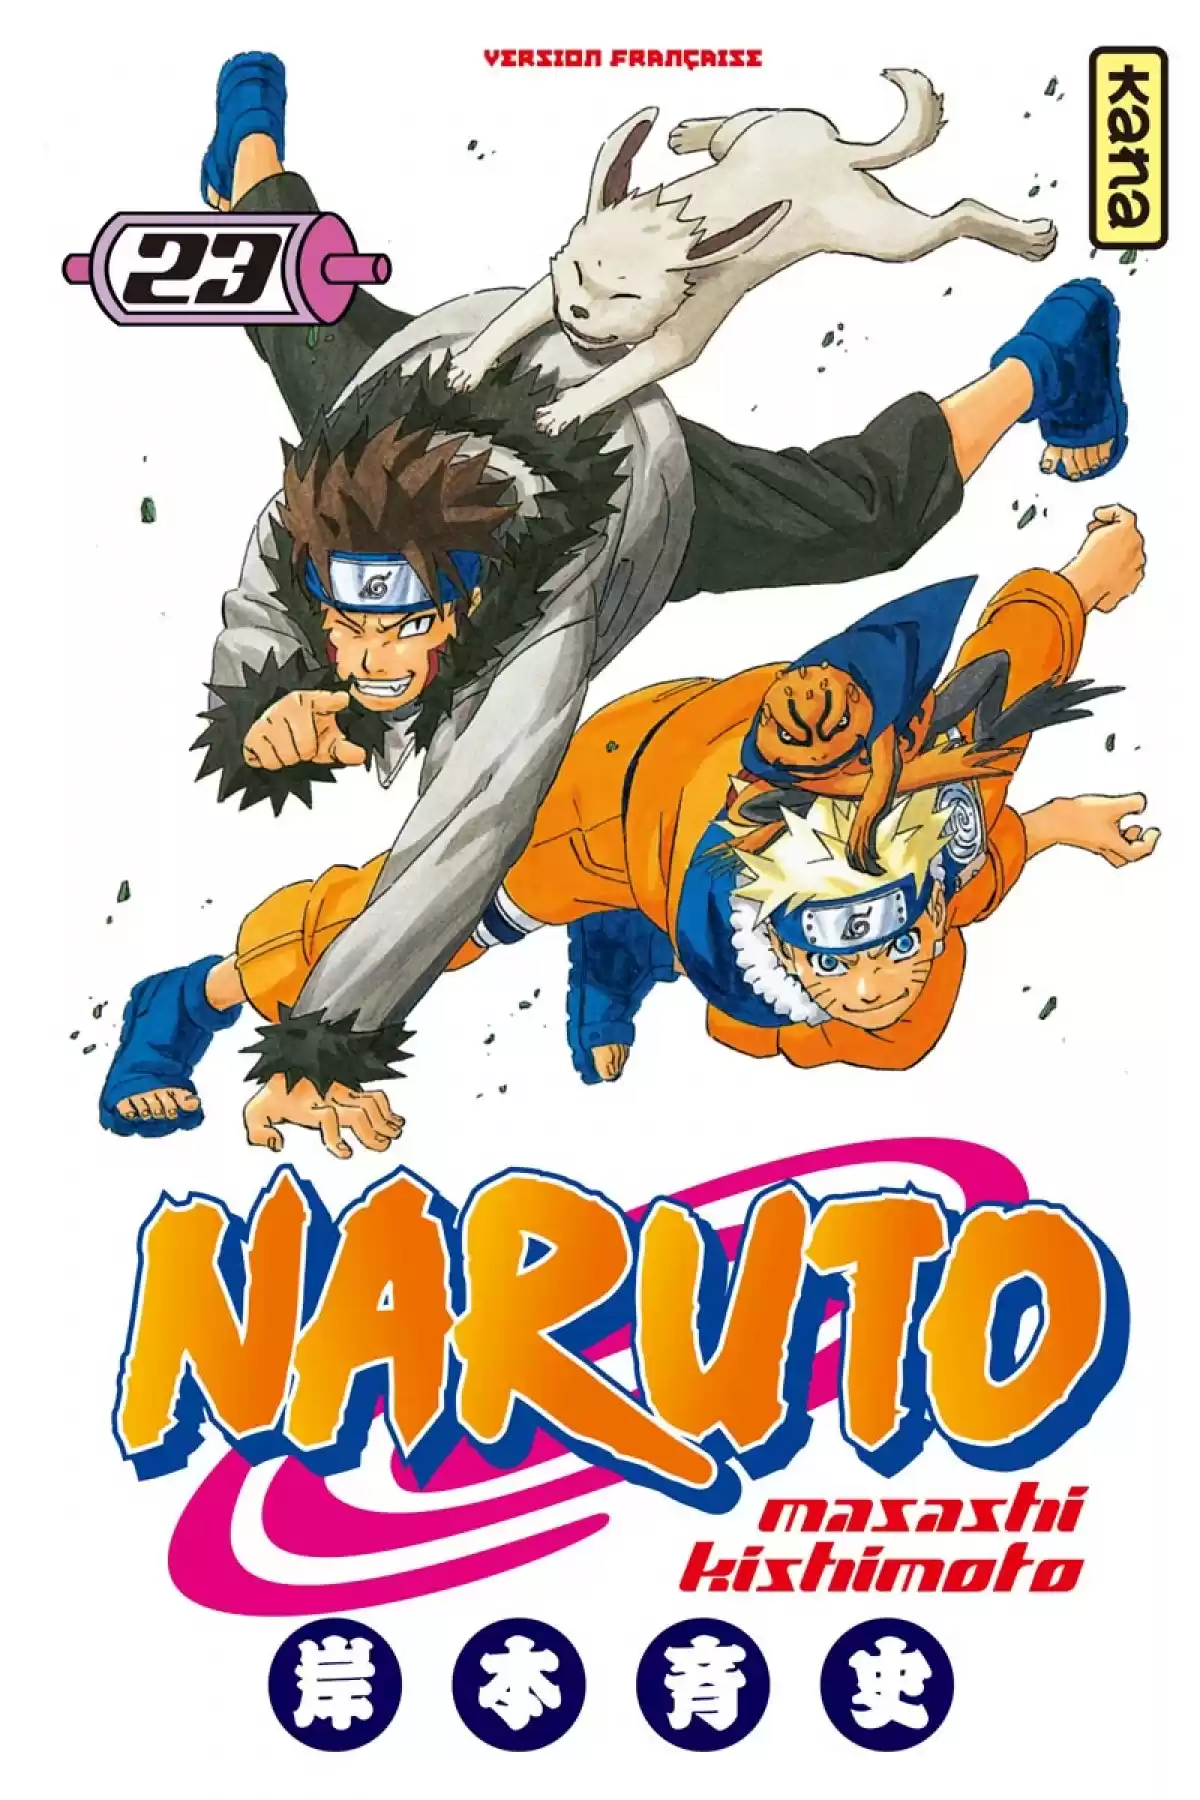 Naruto Volume 23 page 1